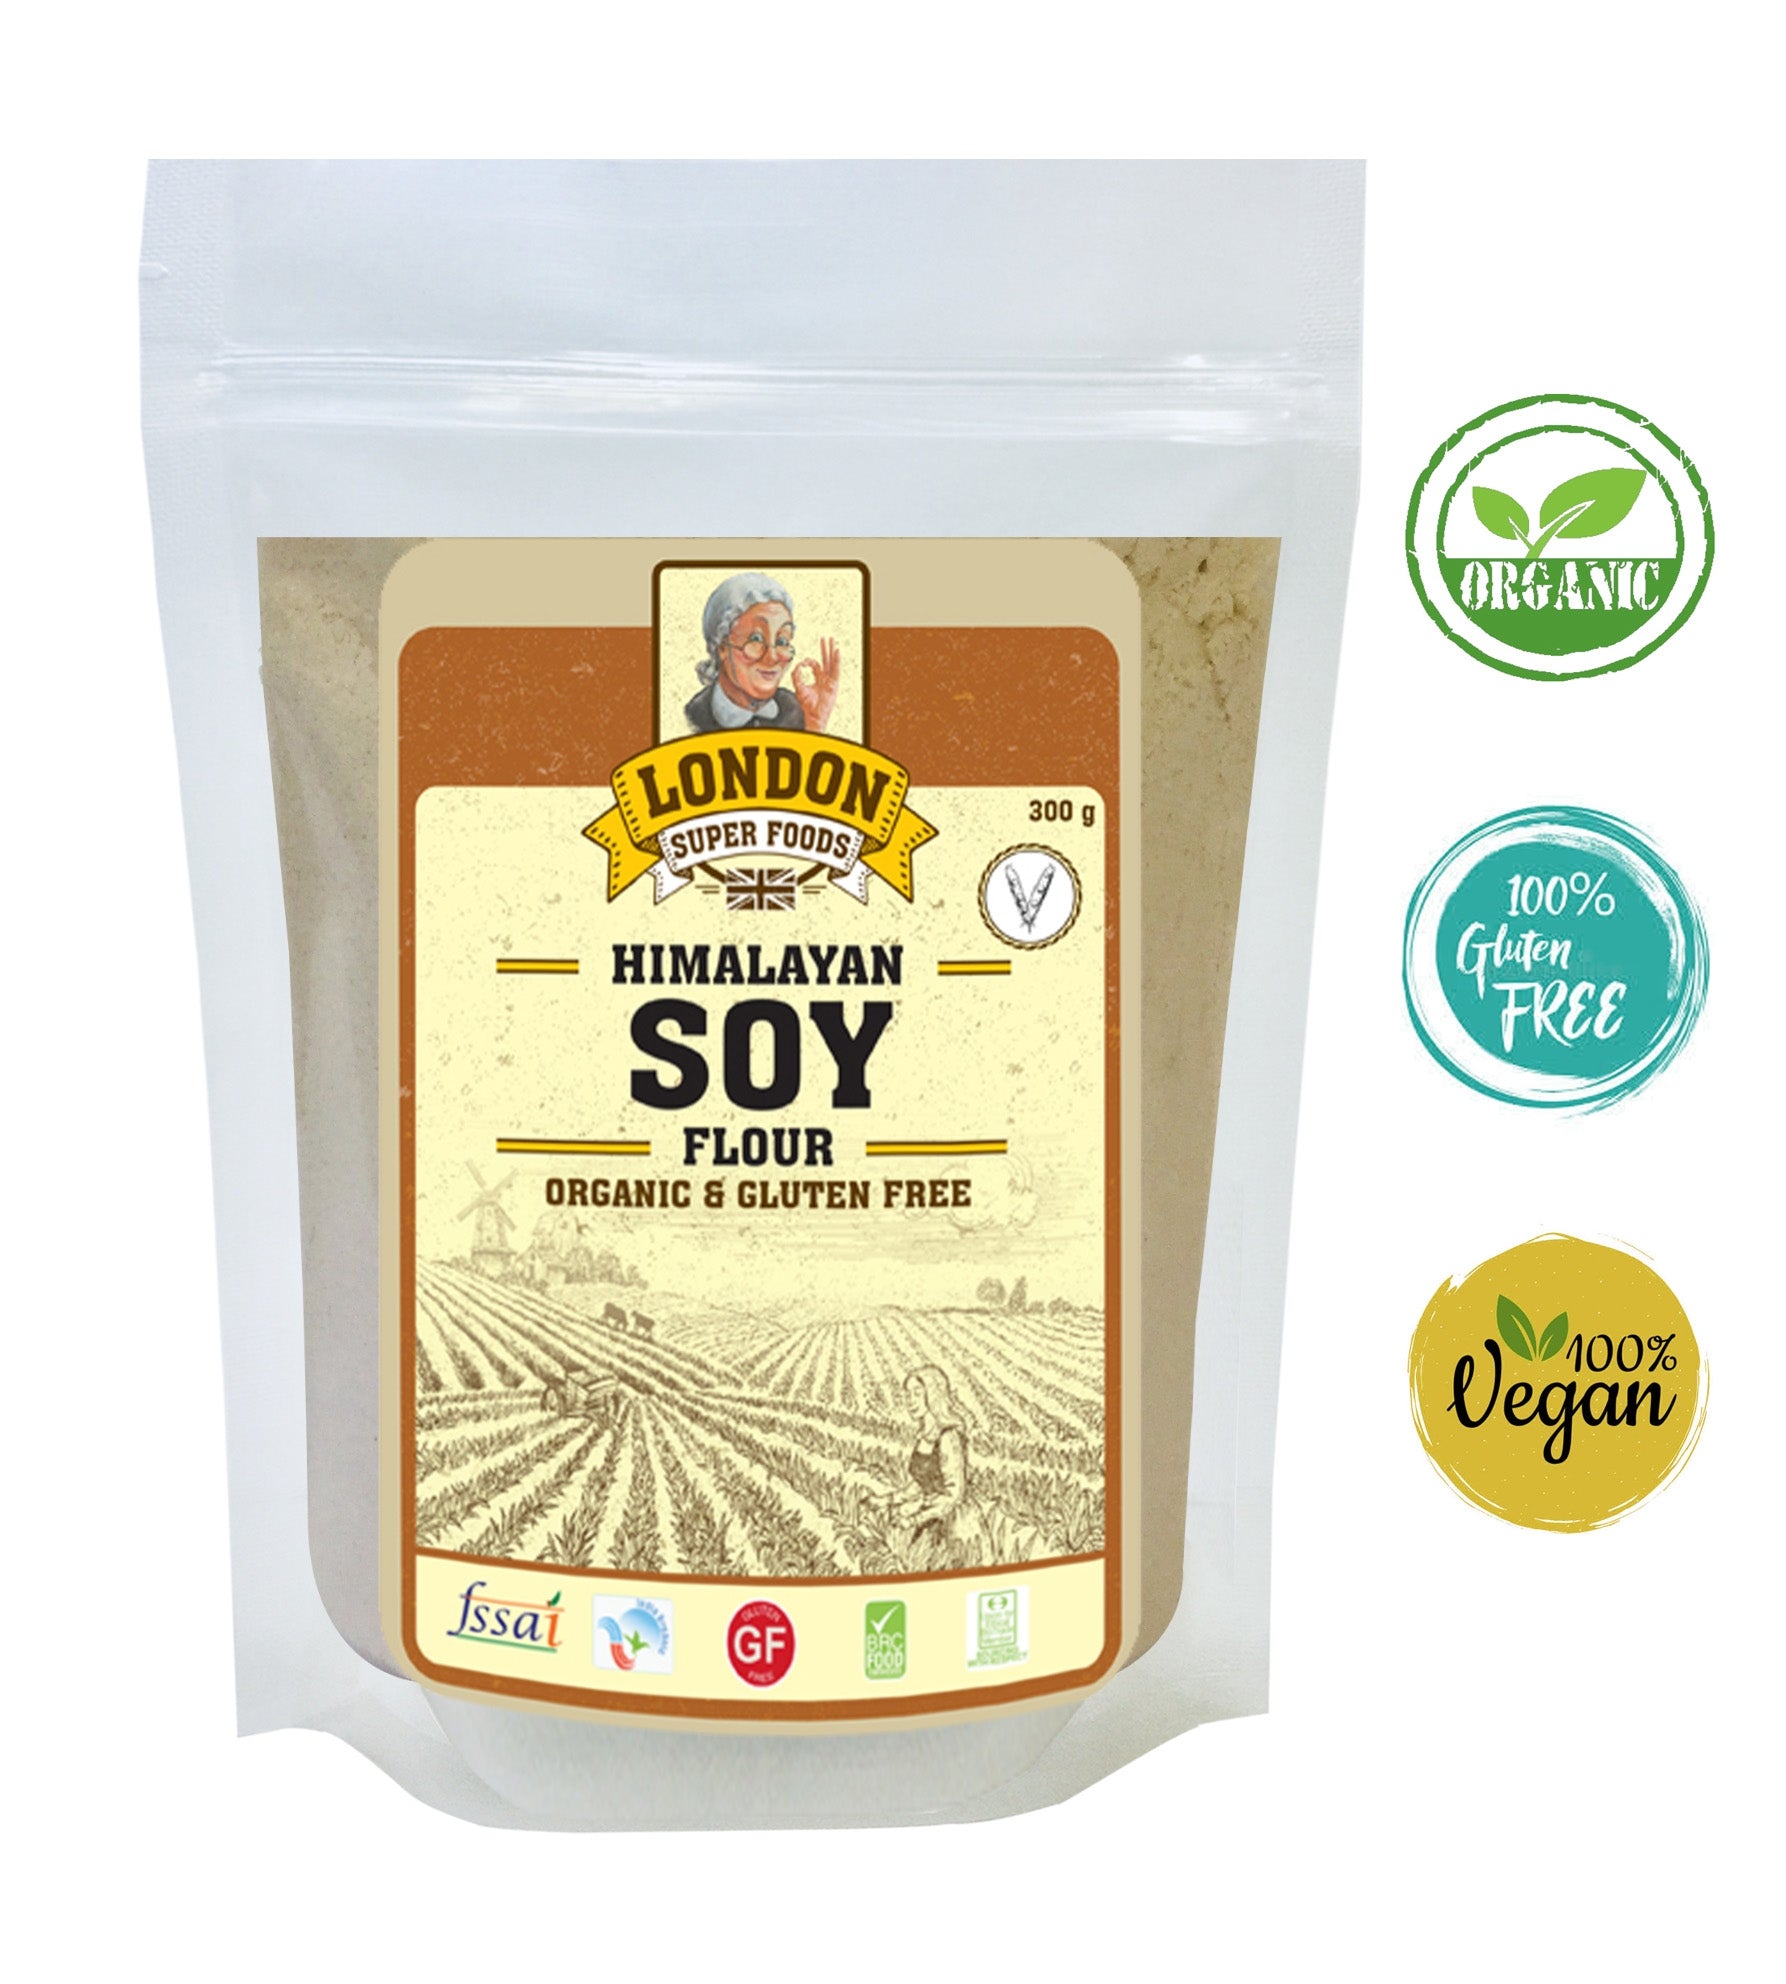 LONDON SUPER FOODS Organic Himalayan Soy Flour, 300g